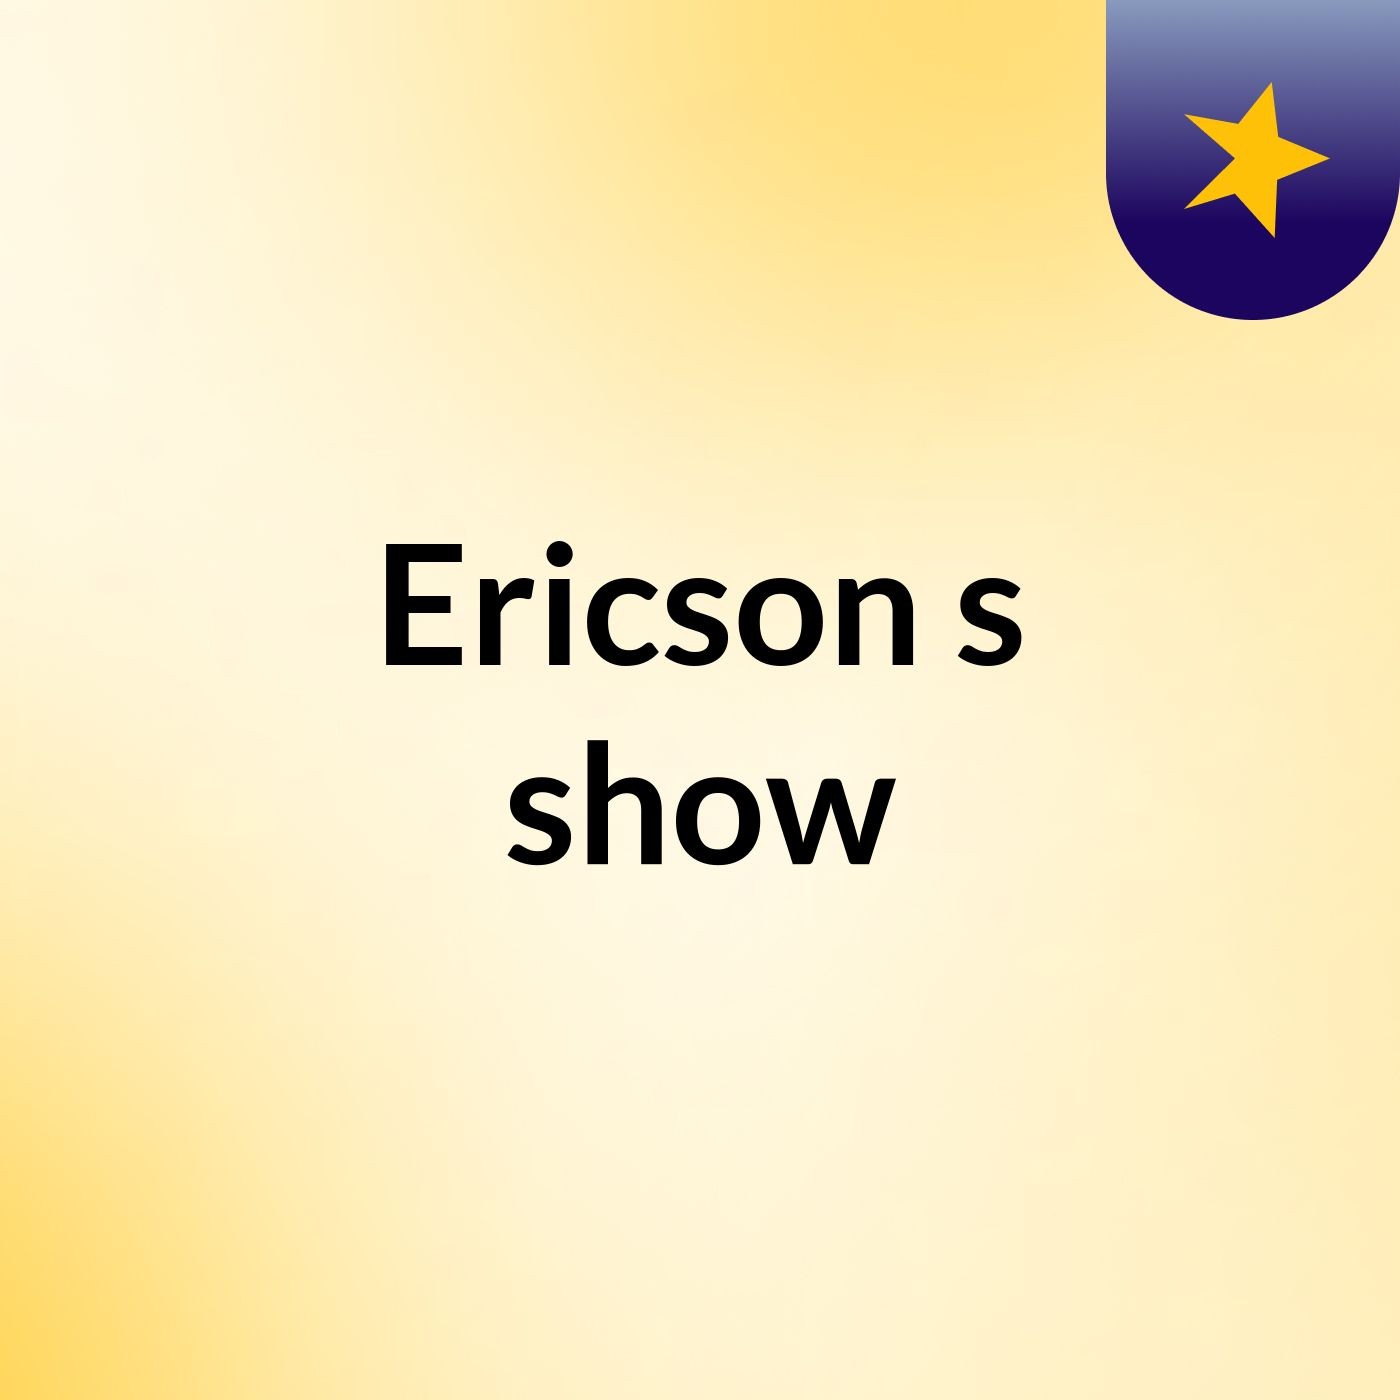 Ericson's show